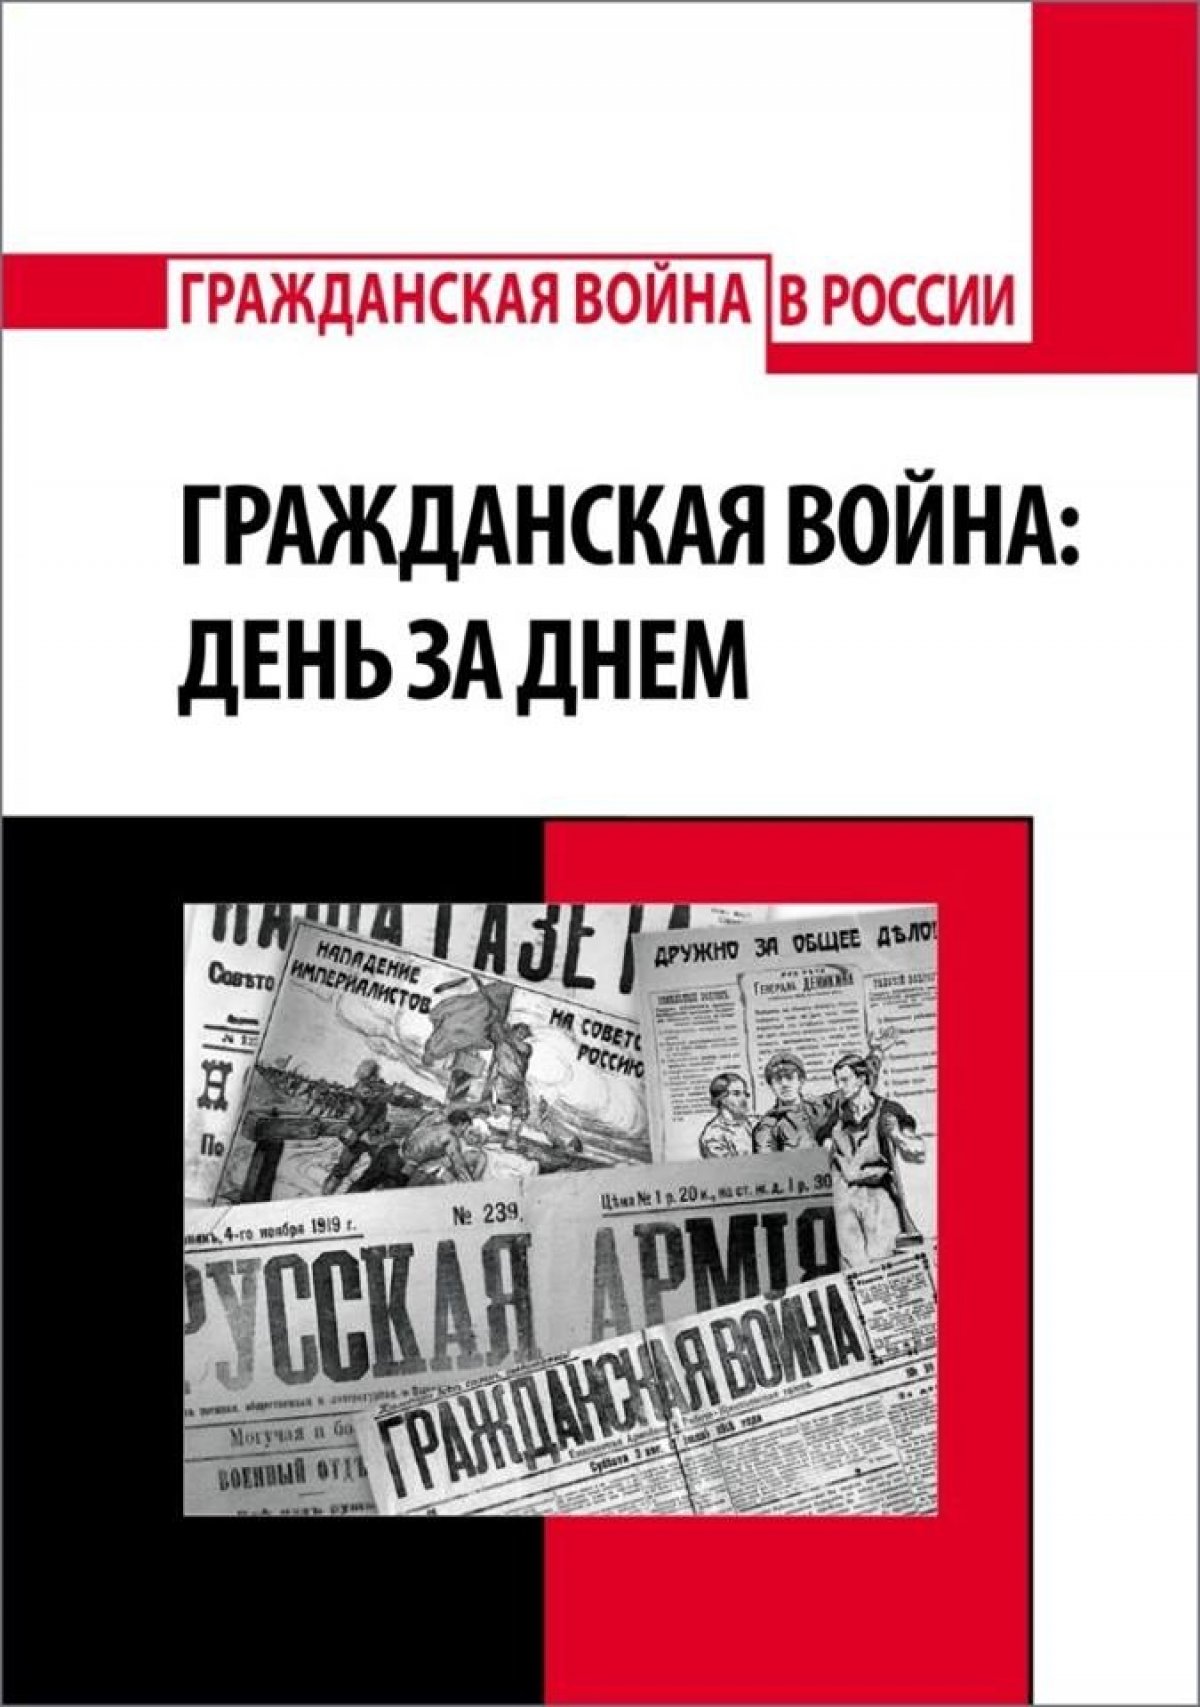 Новая серия книг издательства РХГА посвященная Гражданской войне в России 1917-1922